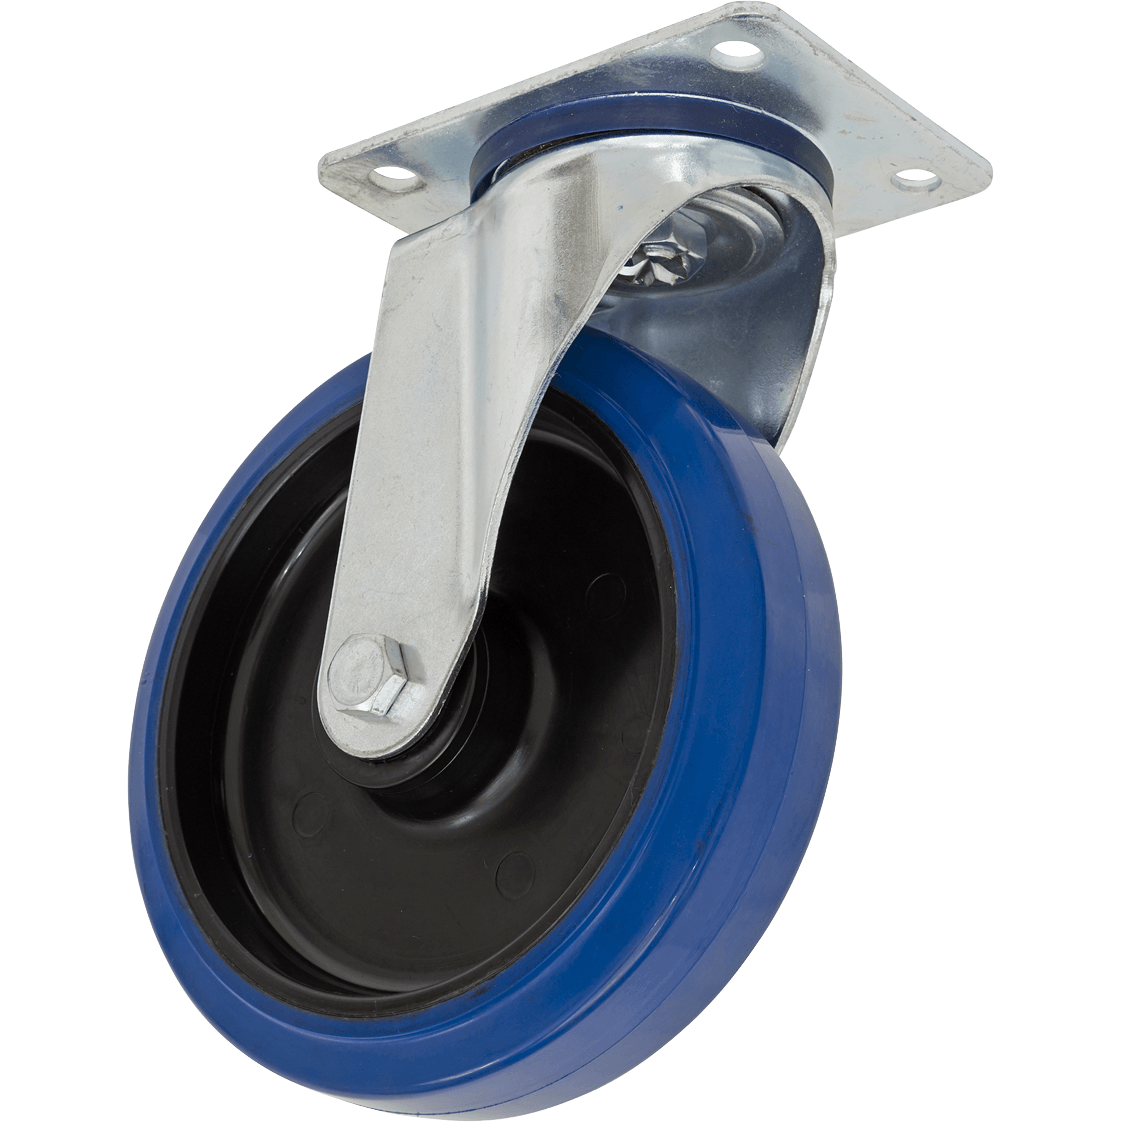 Sealey Heavy-Duty Blue Elastic Rubber Swivel Castor Wheel 100mm